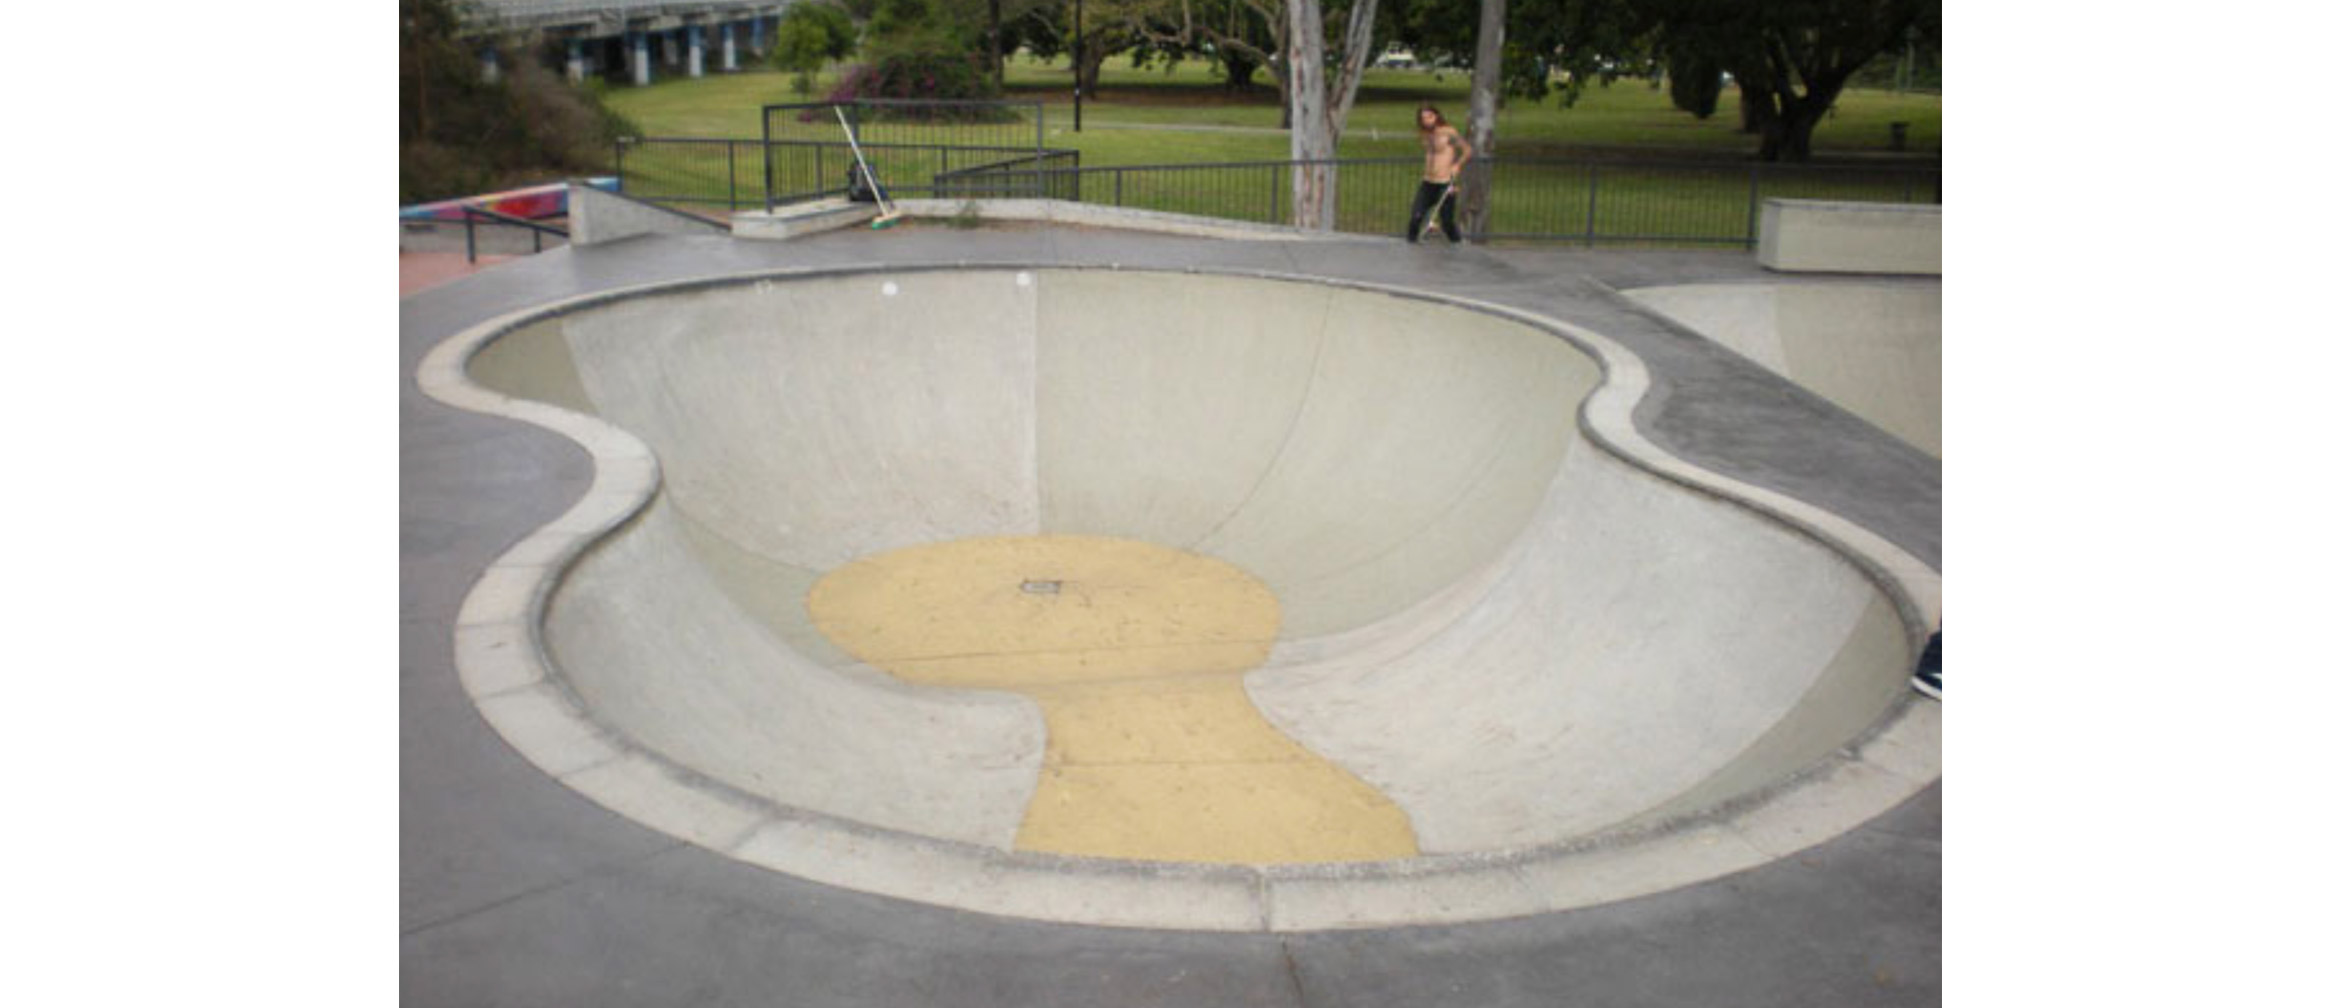 Nerang skate park peanut bowl